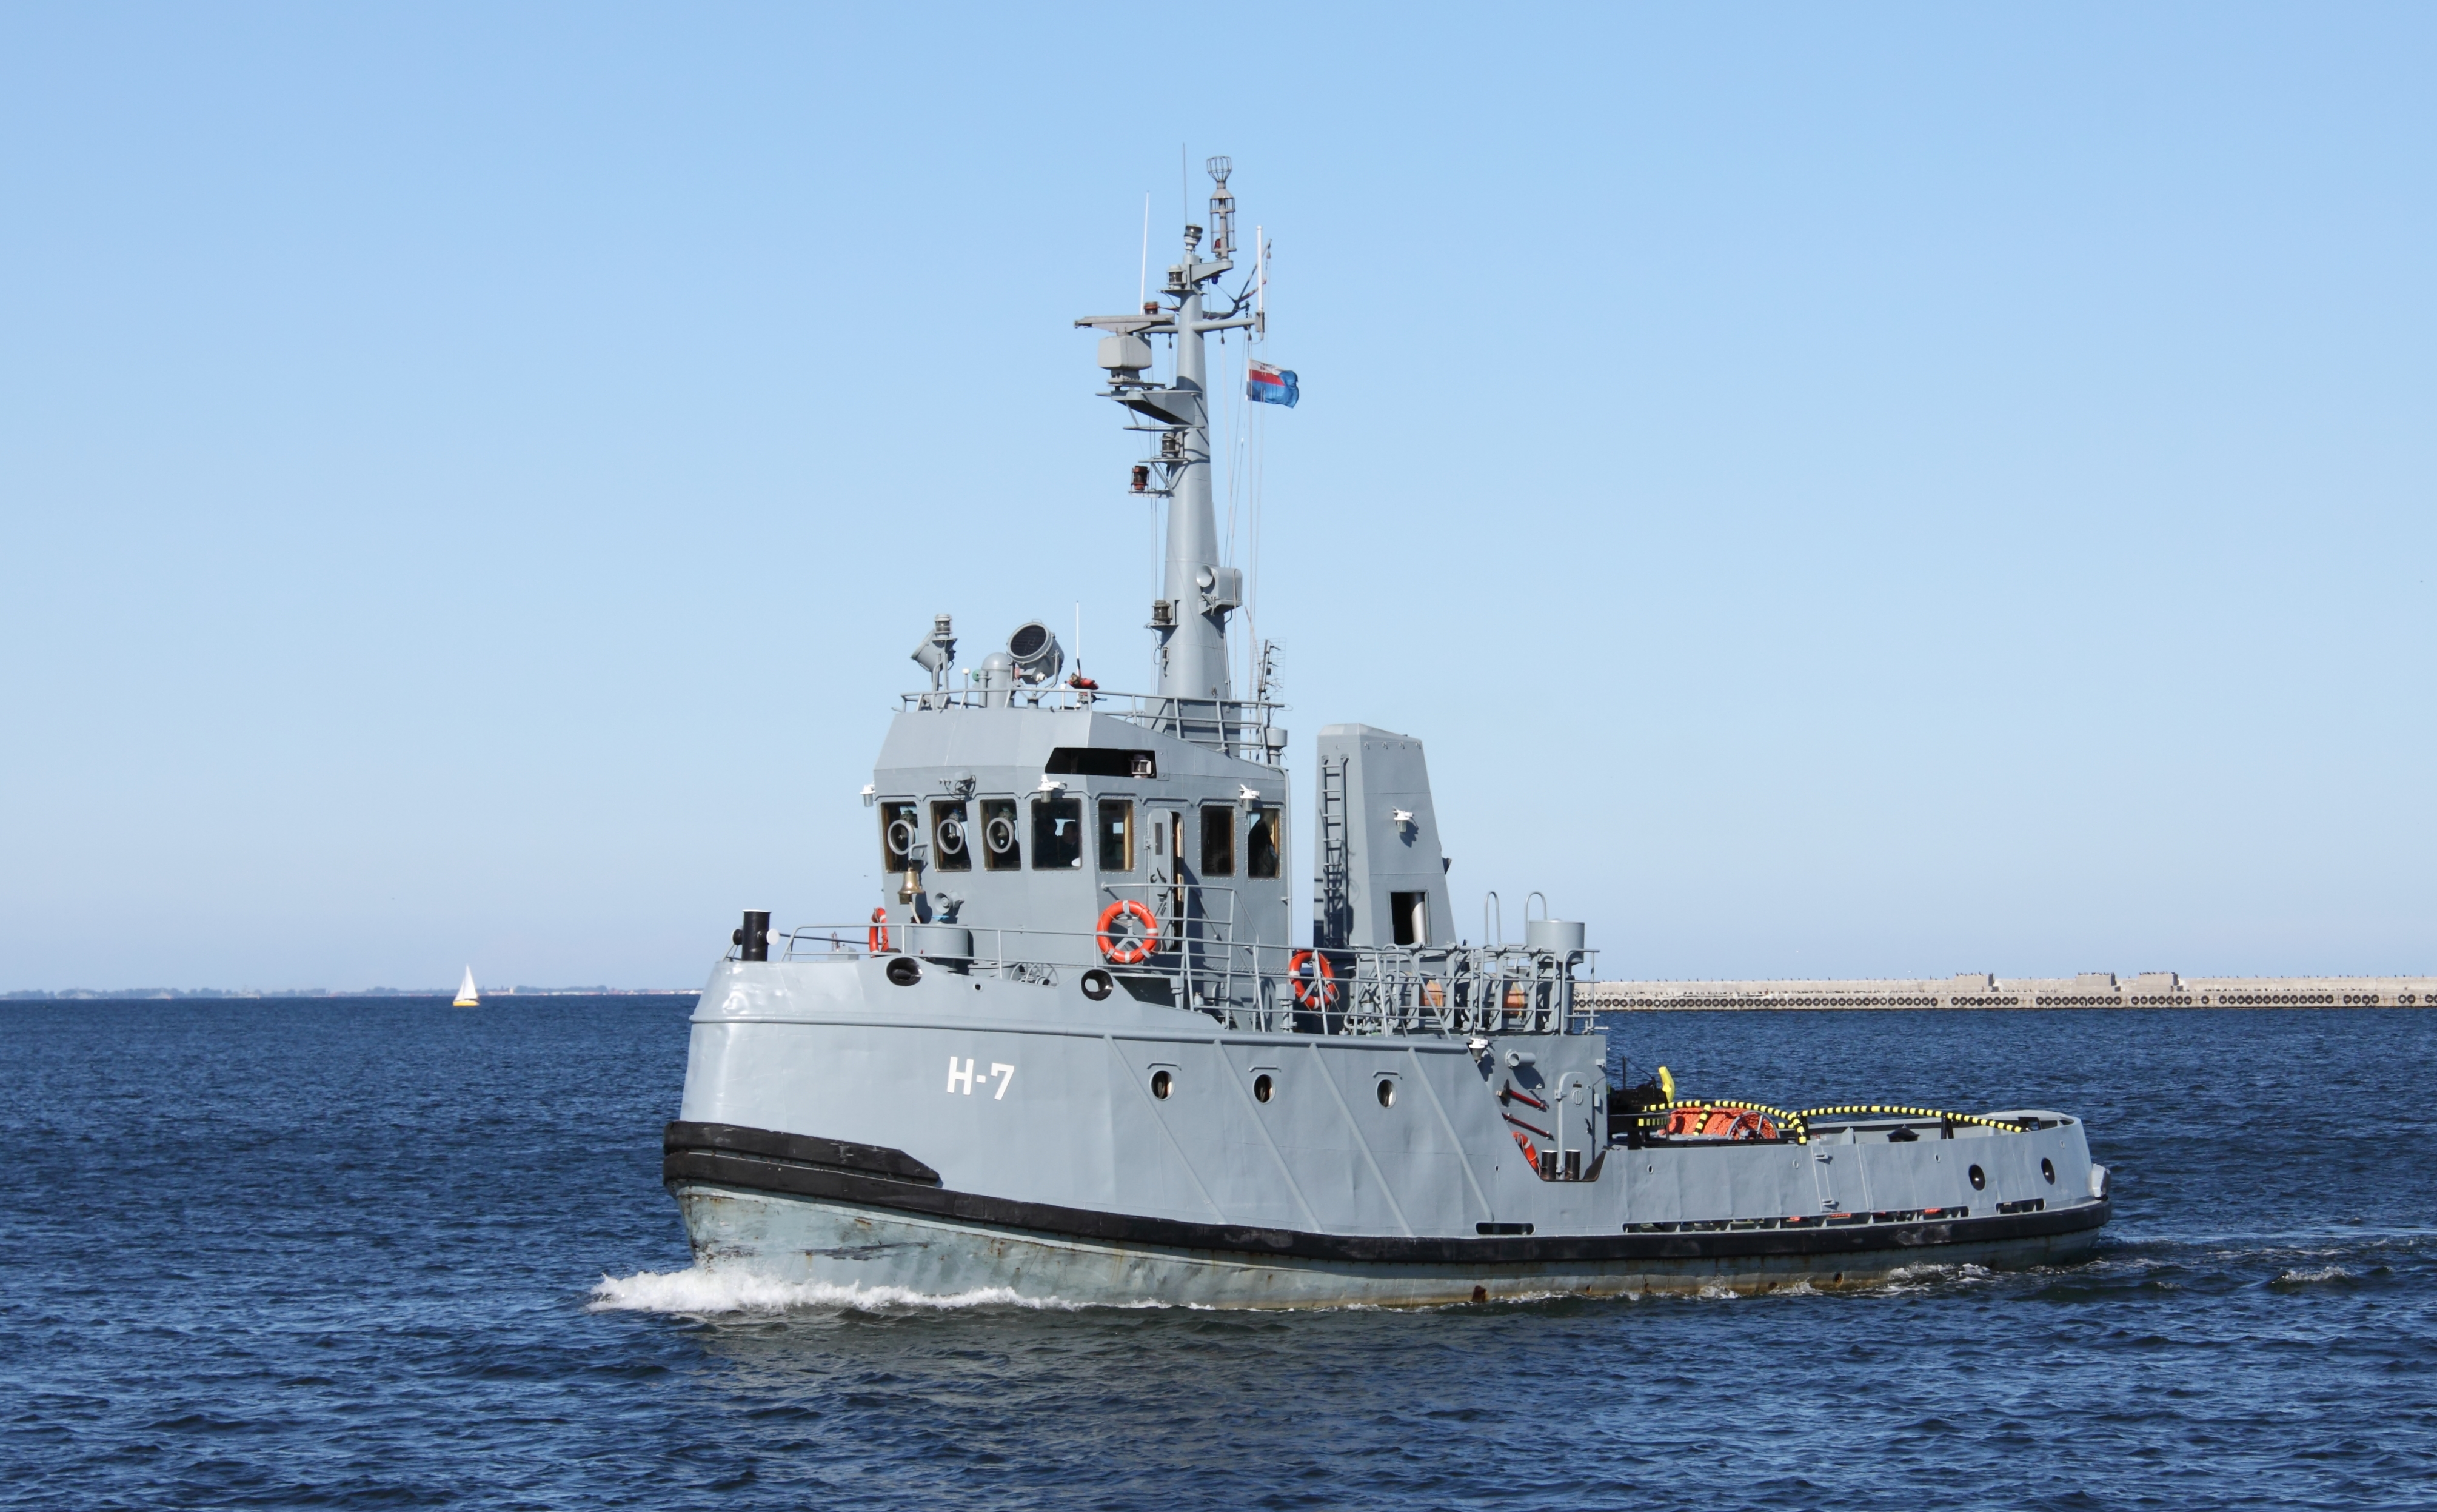 Polish navy tugboat H-7